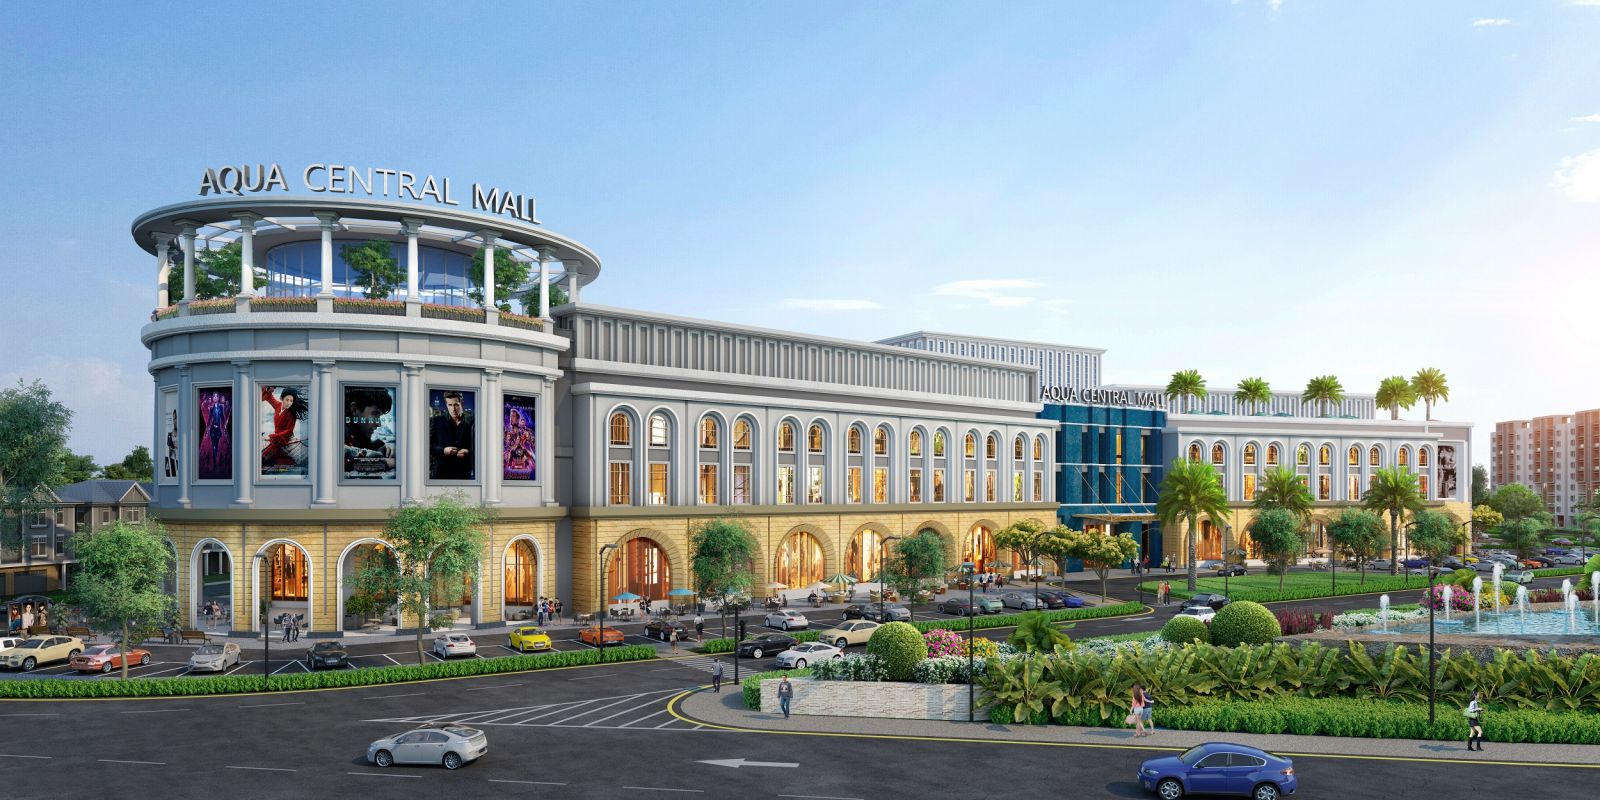 Trung tâm thương mại Aqua Central Mall dự kiến sẽ đưa vào vận hành giai đoạn 1 trong năm 2022 với các mảng nội thất, siêu thị, ẩm thực thời trang, mỹ phẩm, rạp chiếu phim, khu vui chơi trong nhà…  